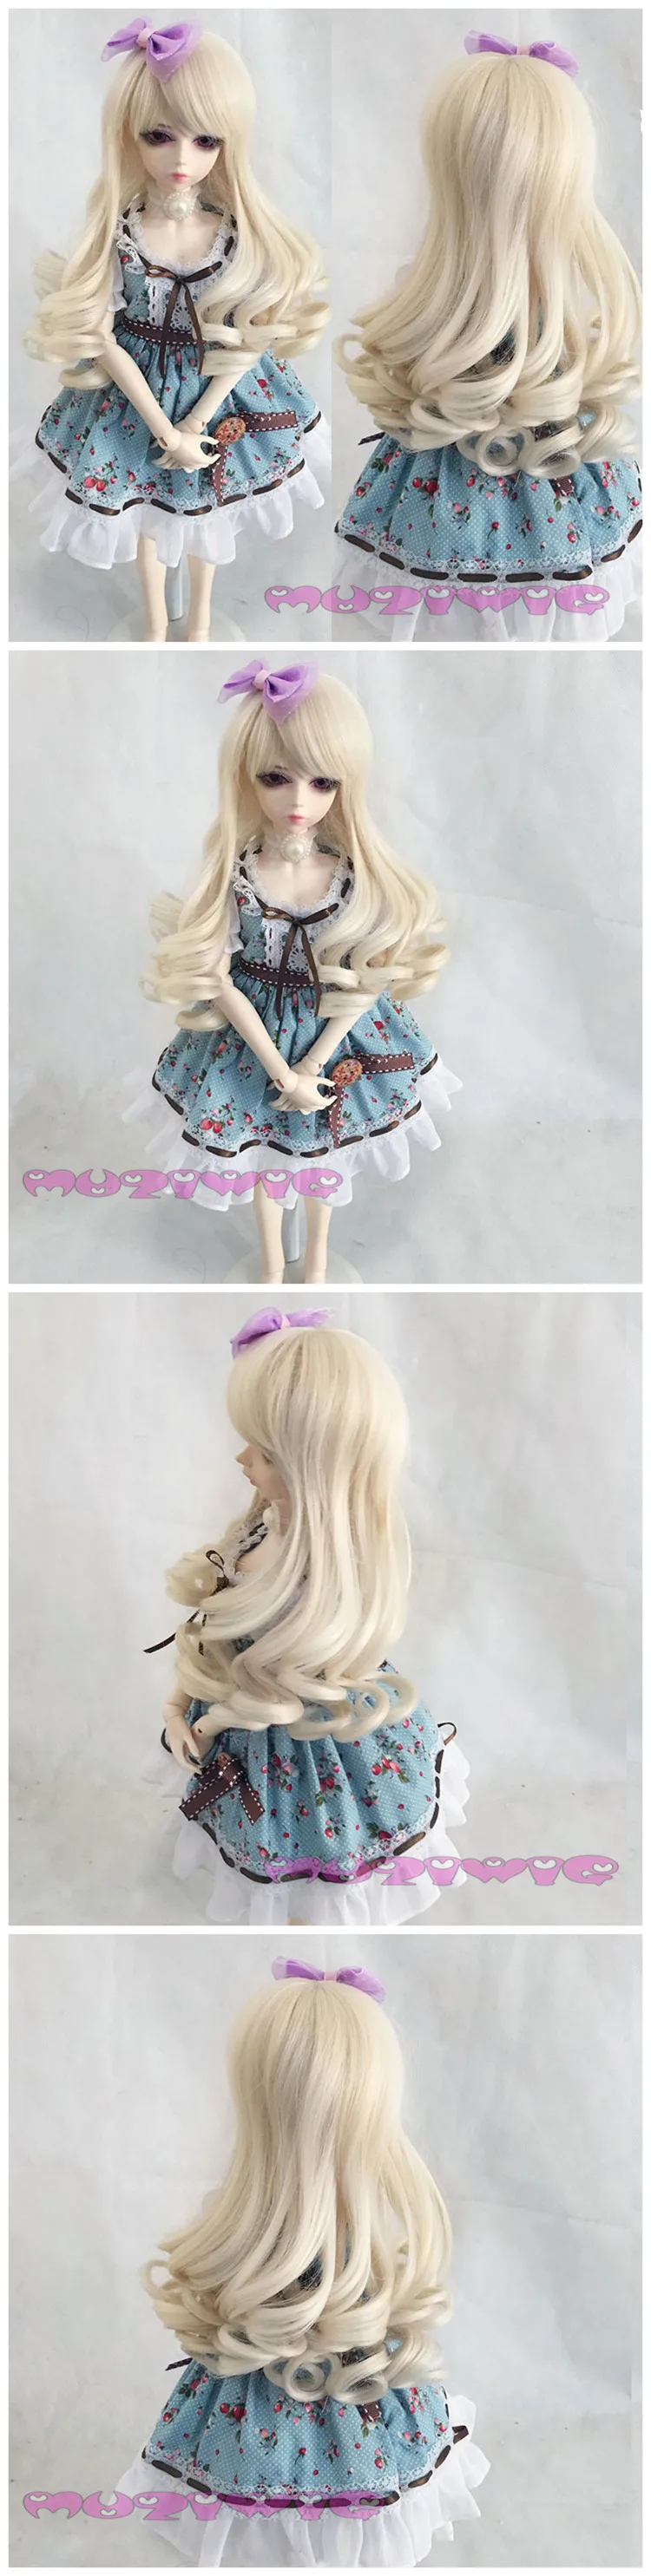 Muziwig синтетический бежевый Джерри длинные вьющиеся кукла парик волос с косой челкой для bjd 1/3 1/4 1/6 1/8 SD парики для кукол аксессуары на продажу